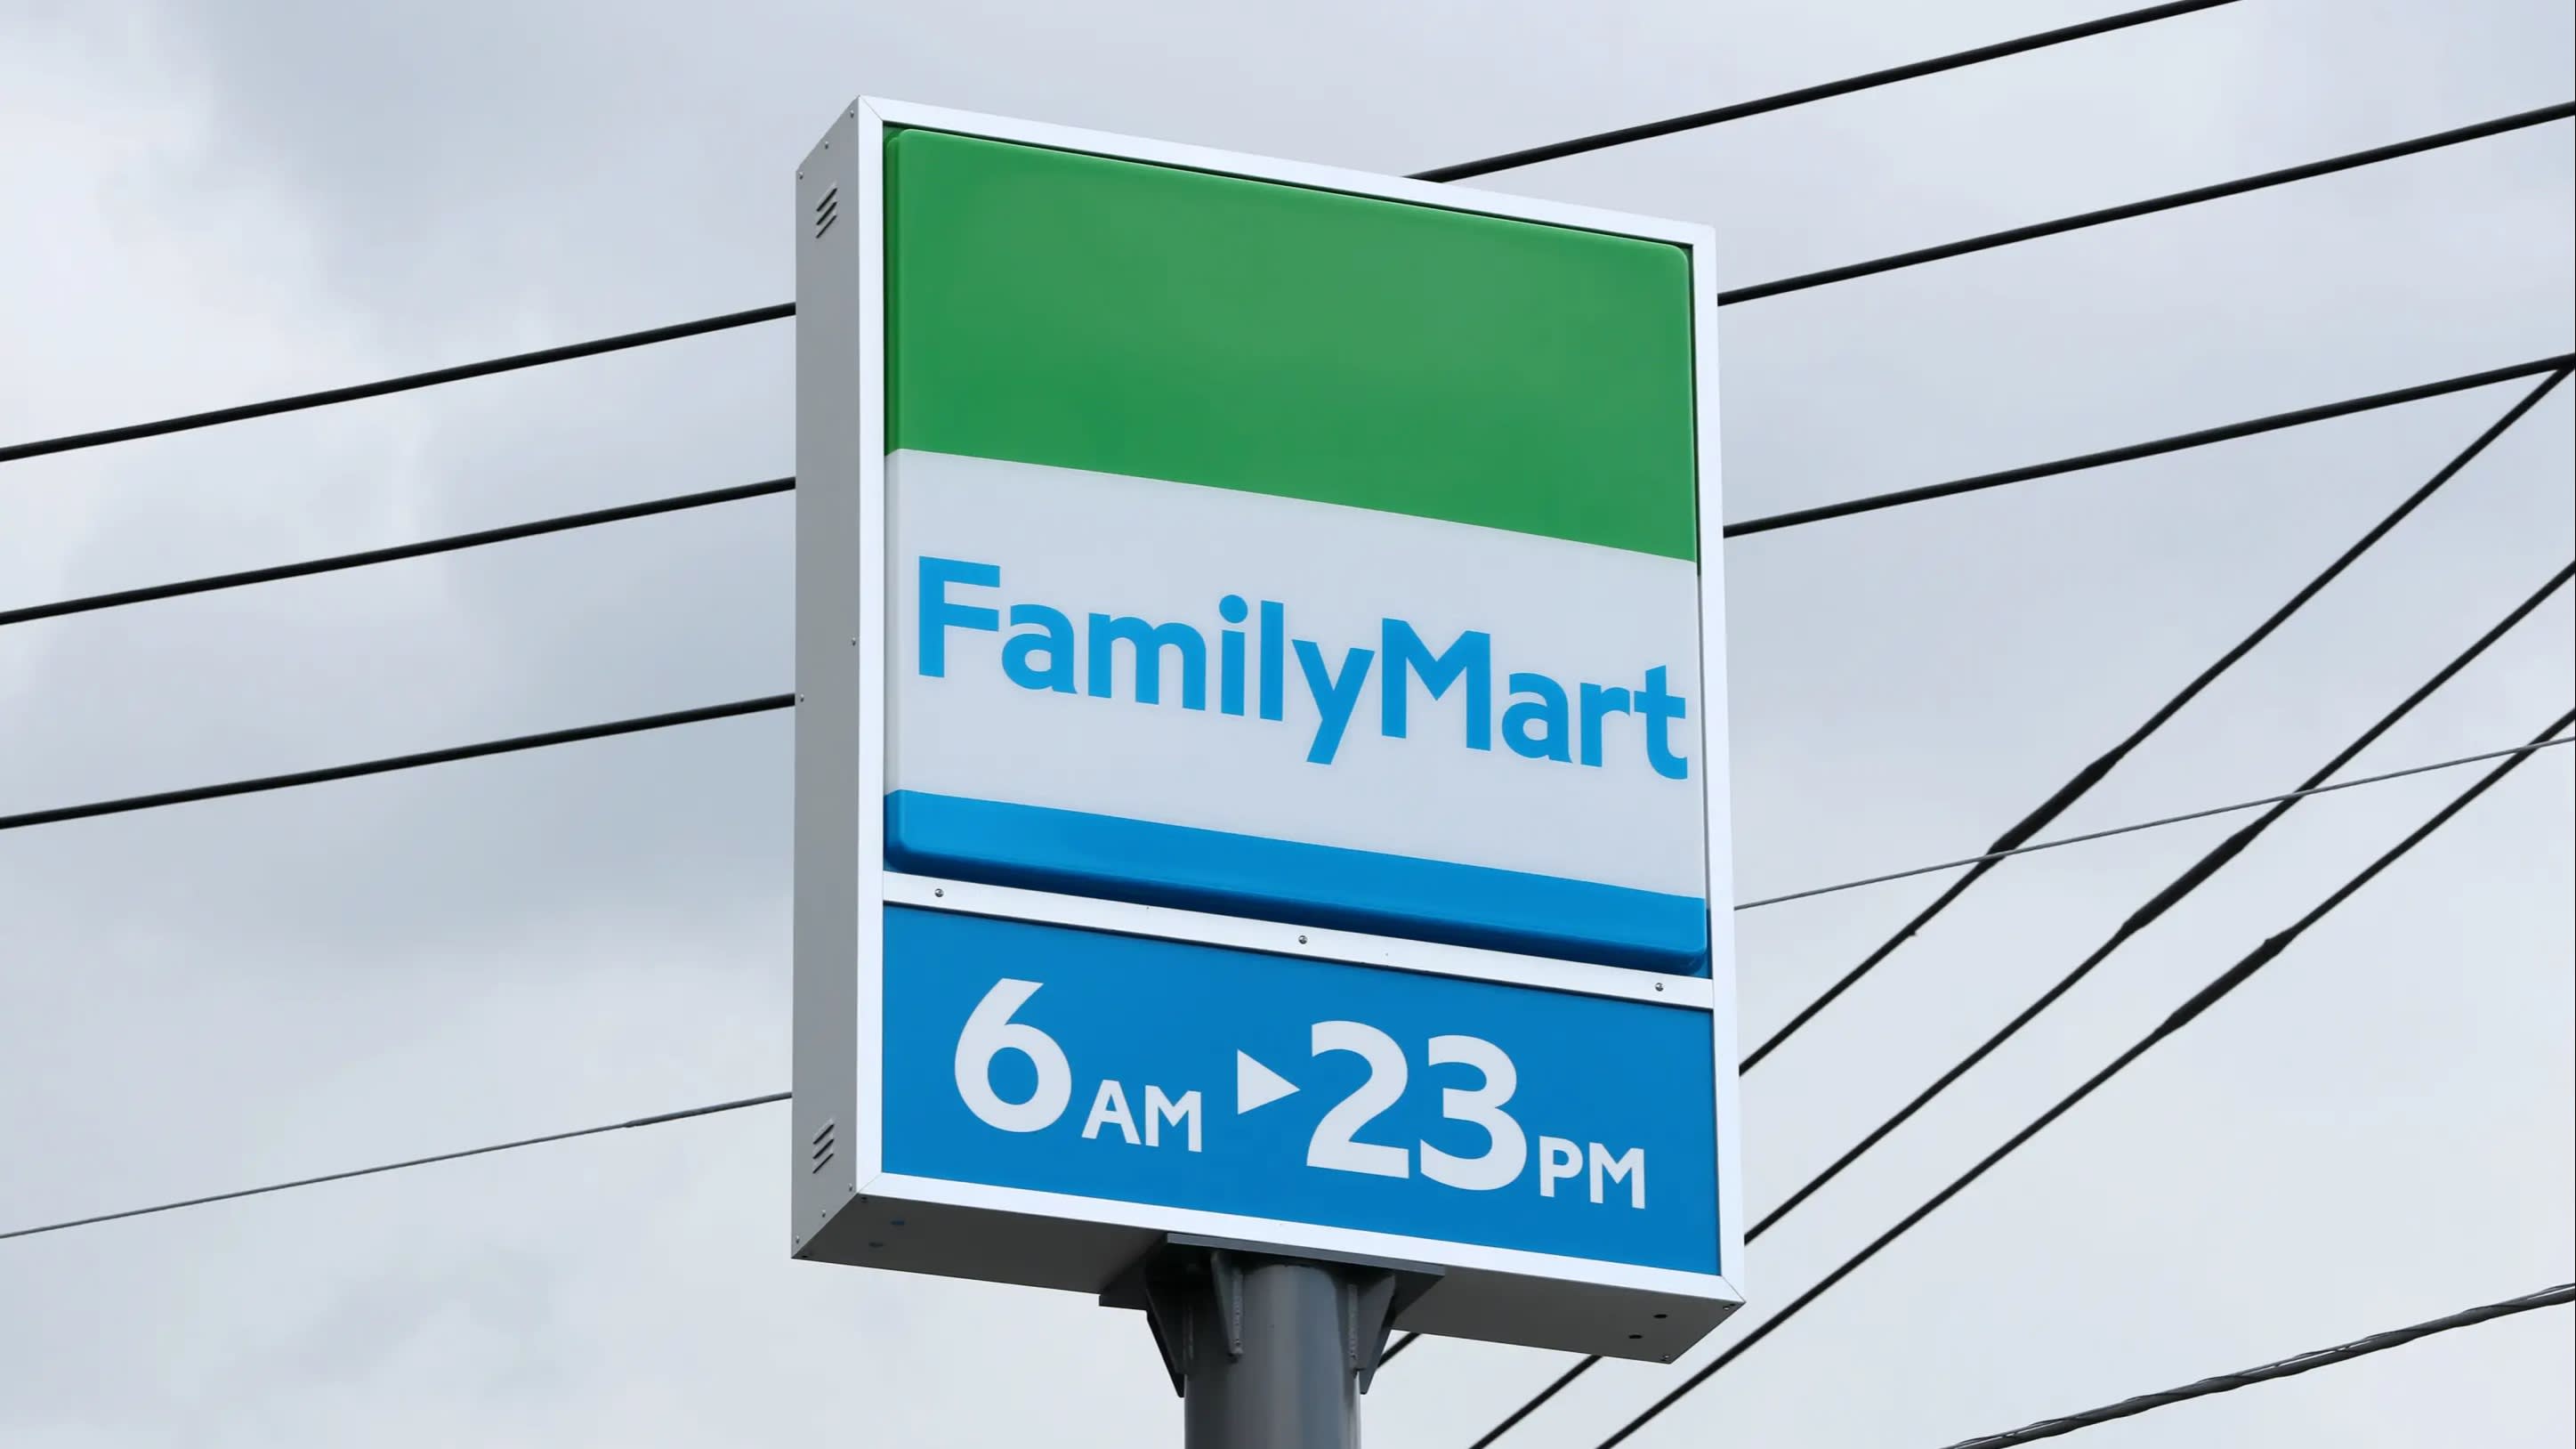 Familymart Logo - Japan's FamilyMart To Test Alternatives To 24 Hour Model